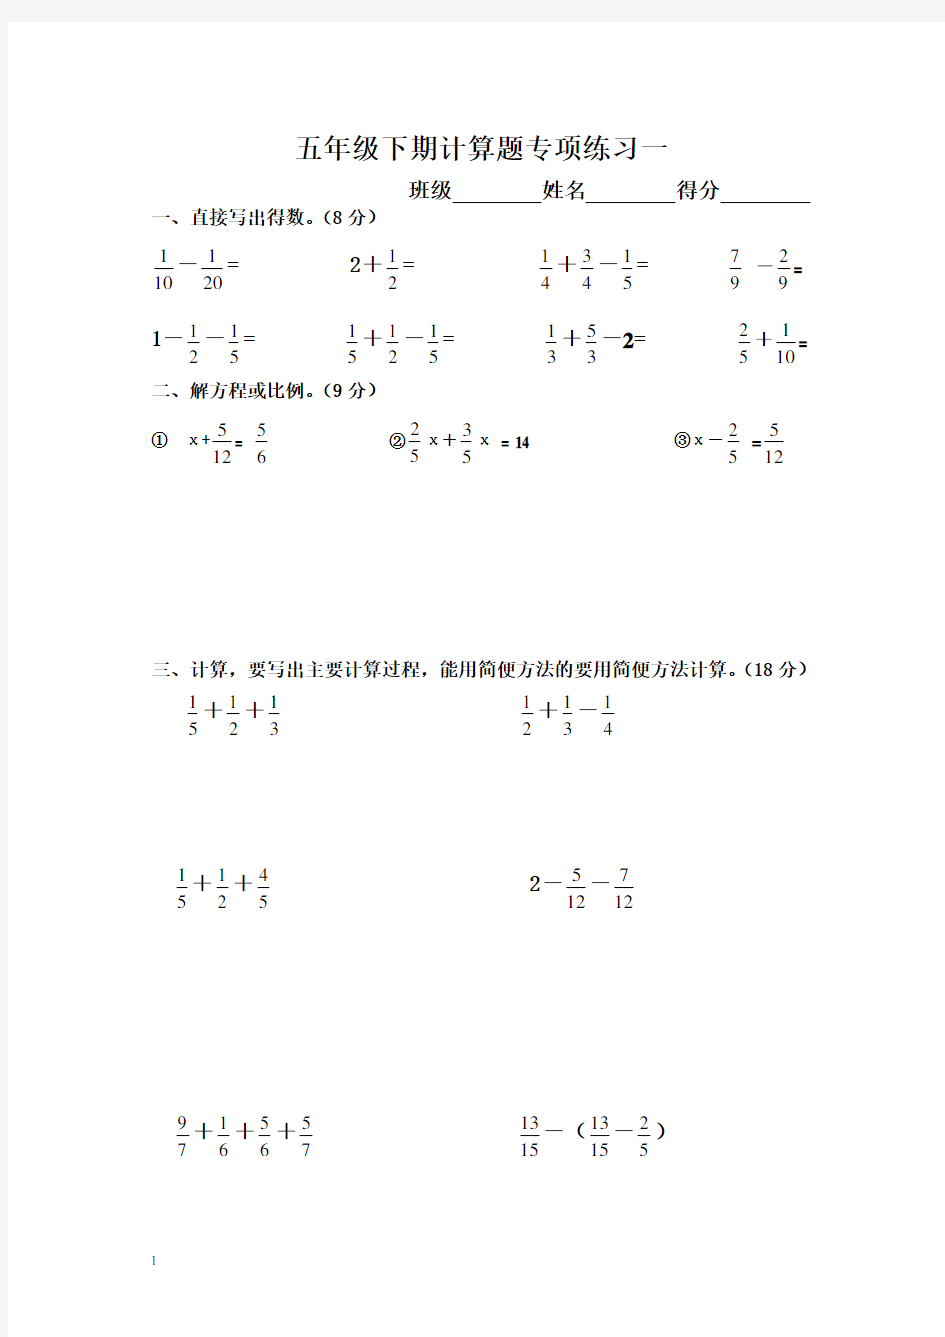 新人教版五年级下册数学计算题专项训练经典练习题(共10套题)